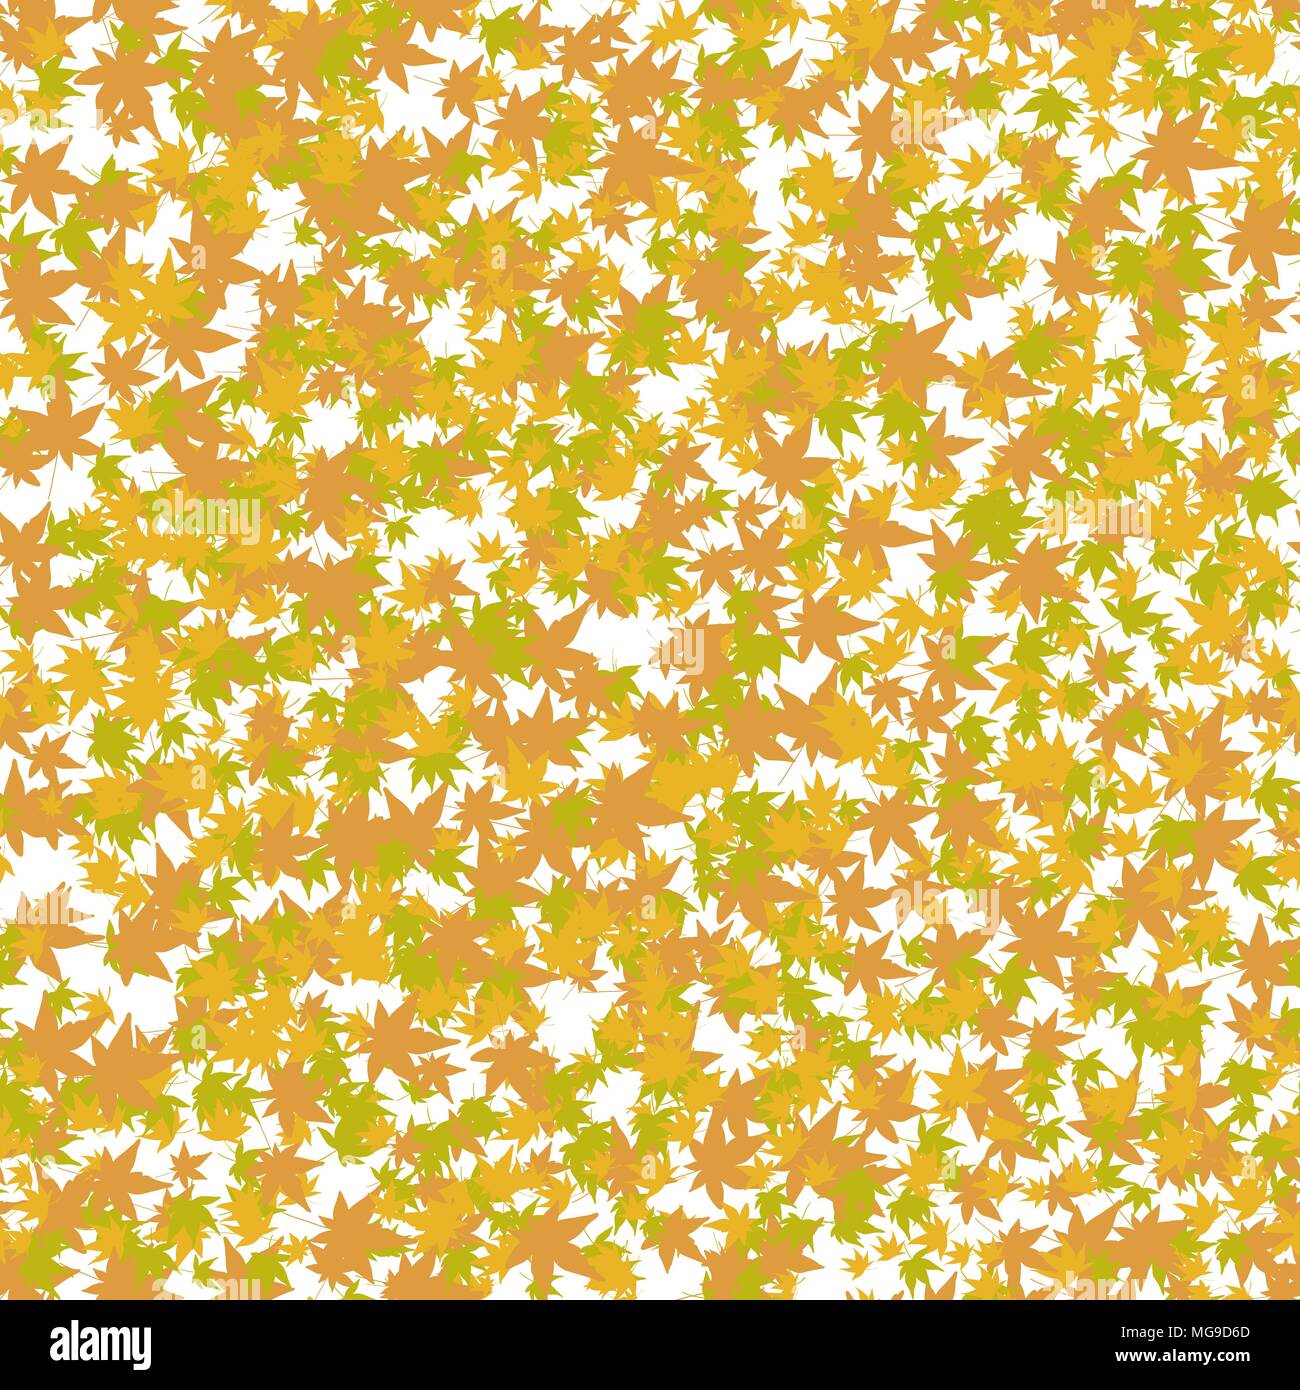 Coloridas hojas de arce. Patrón sin fisuras. Momiji japonés de temporada. Caída de fondo. Acer palmatum. Los colores de otoño. Sitio web de fondo, decoración o Ilustración del Vector